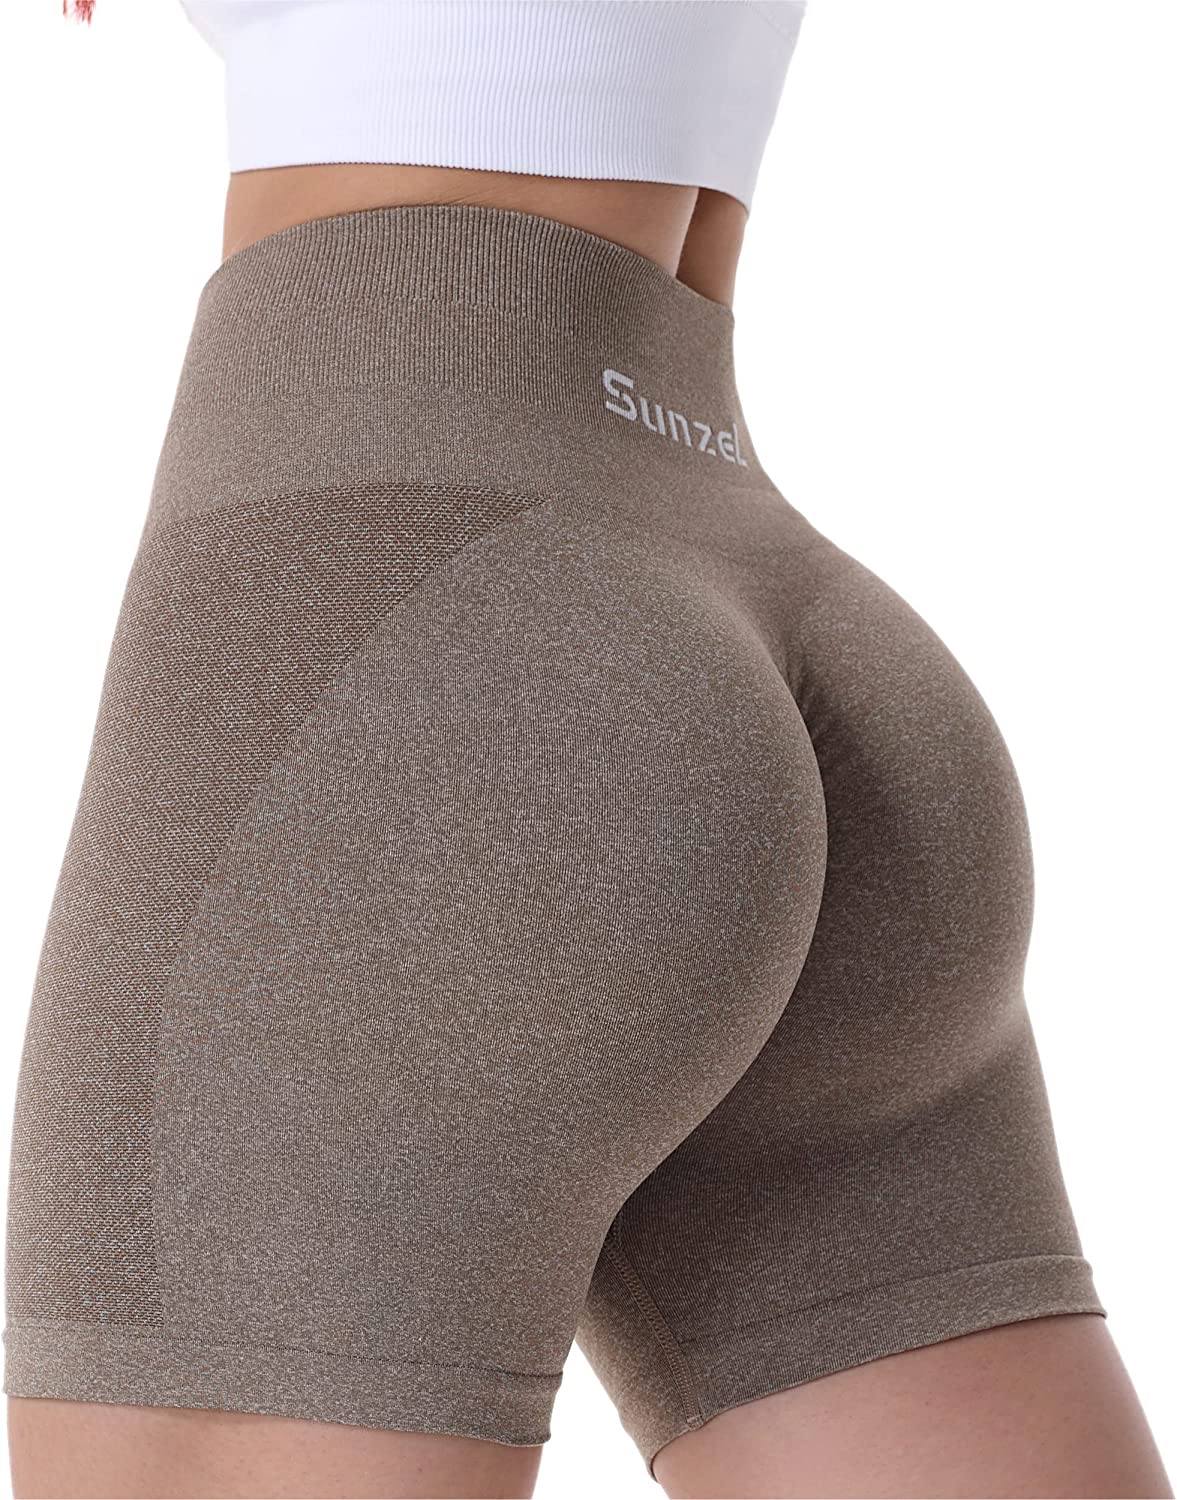  Sunzel Workout Biker Shorts Women Scrunch Butt